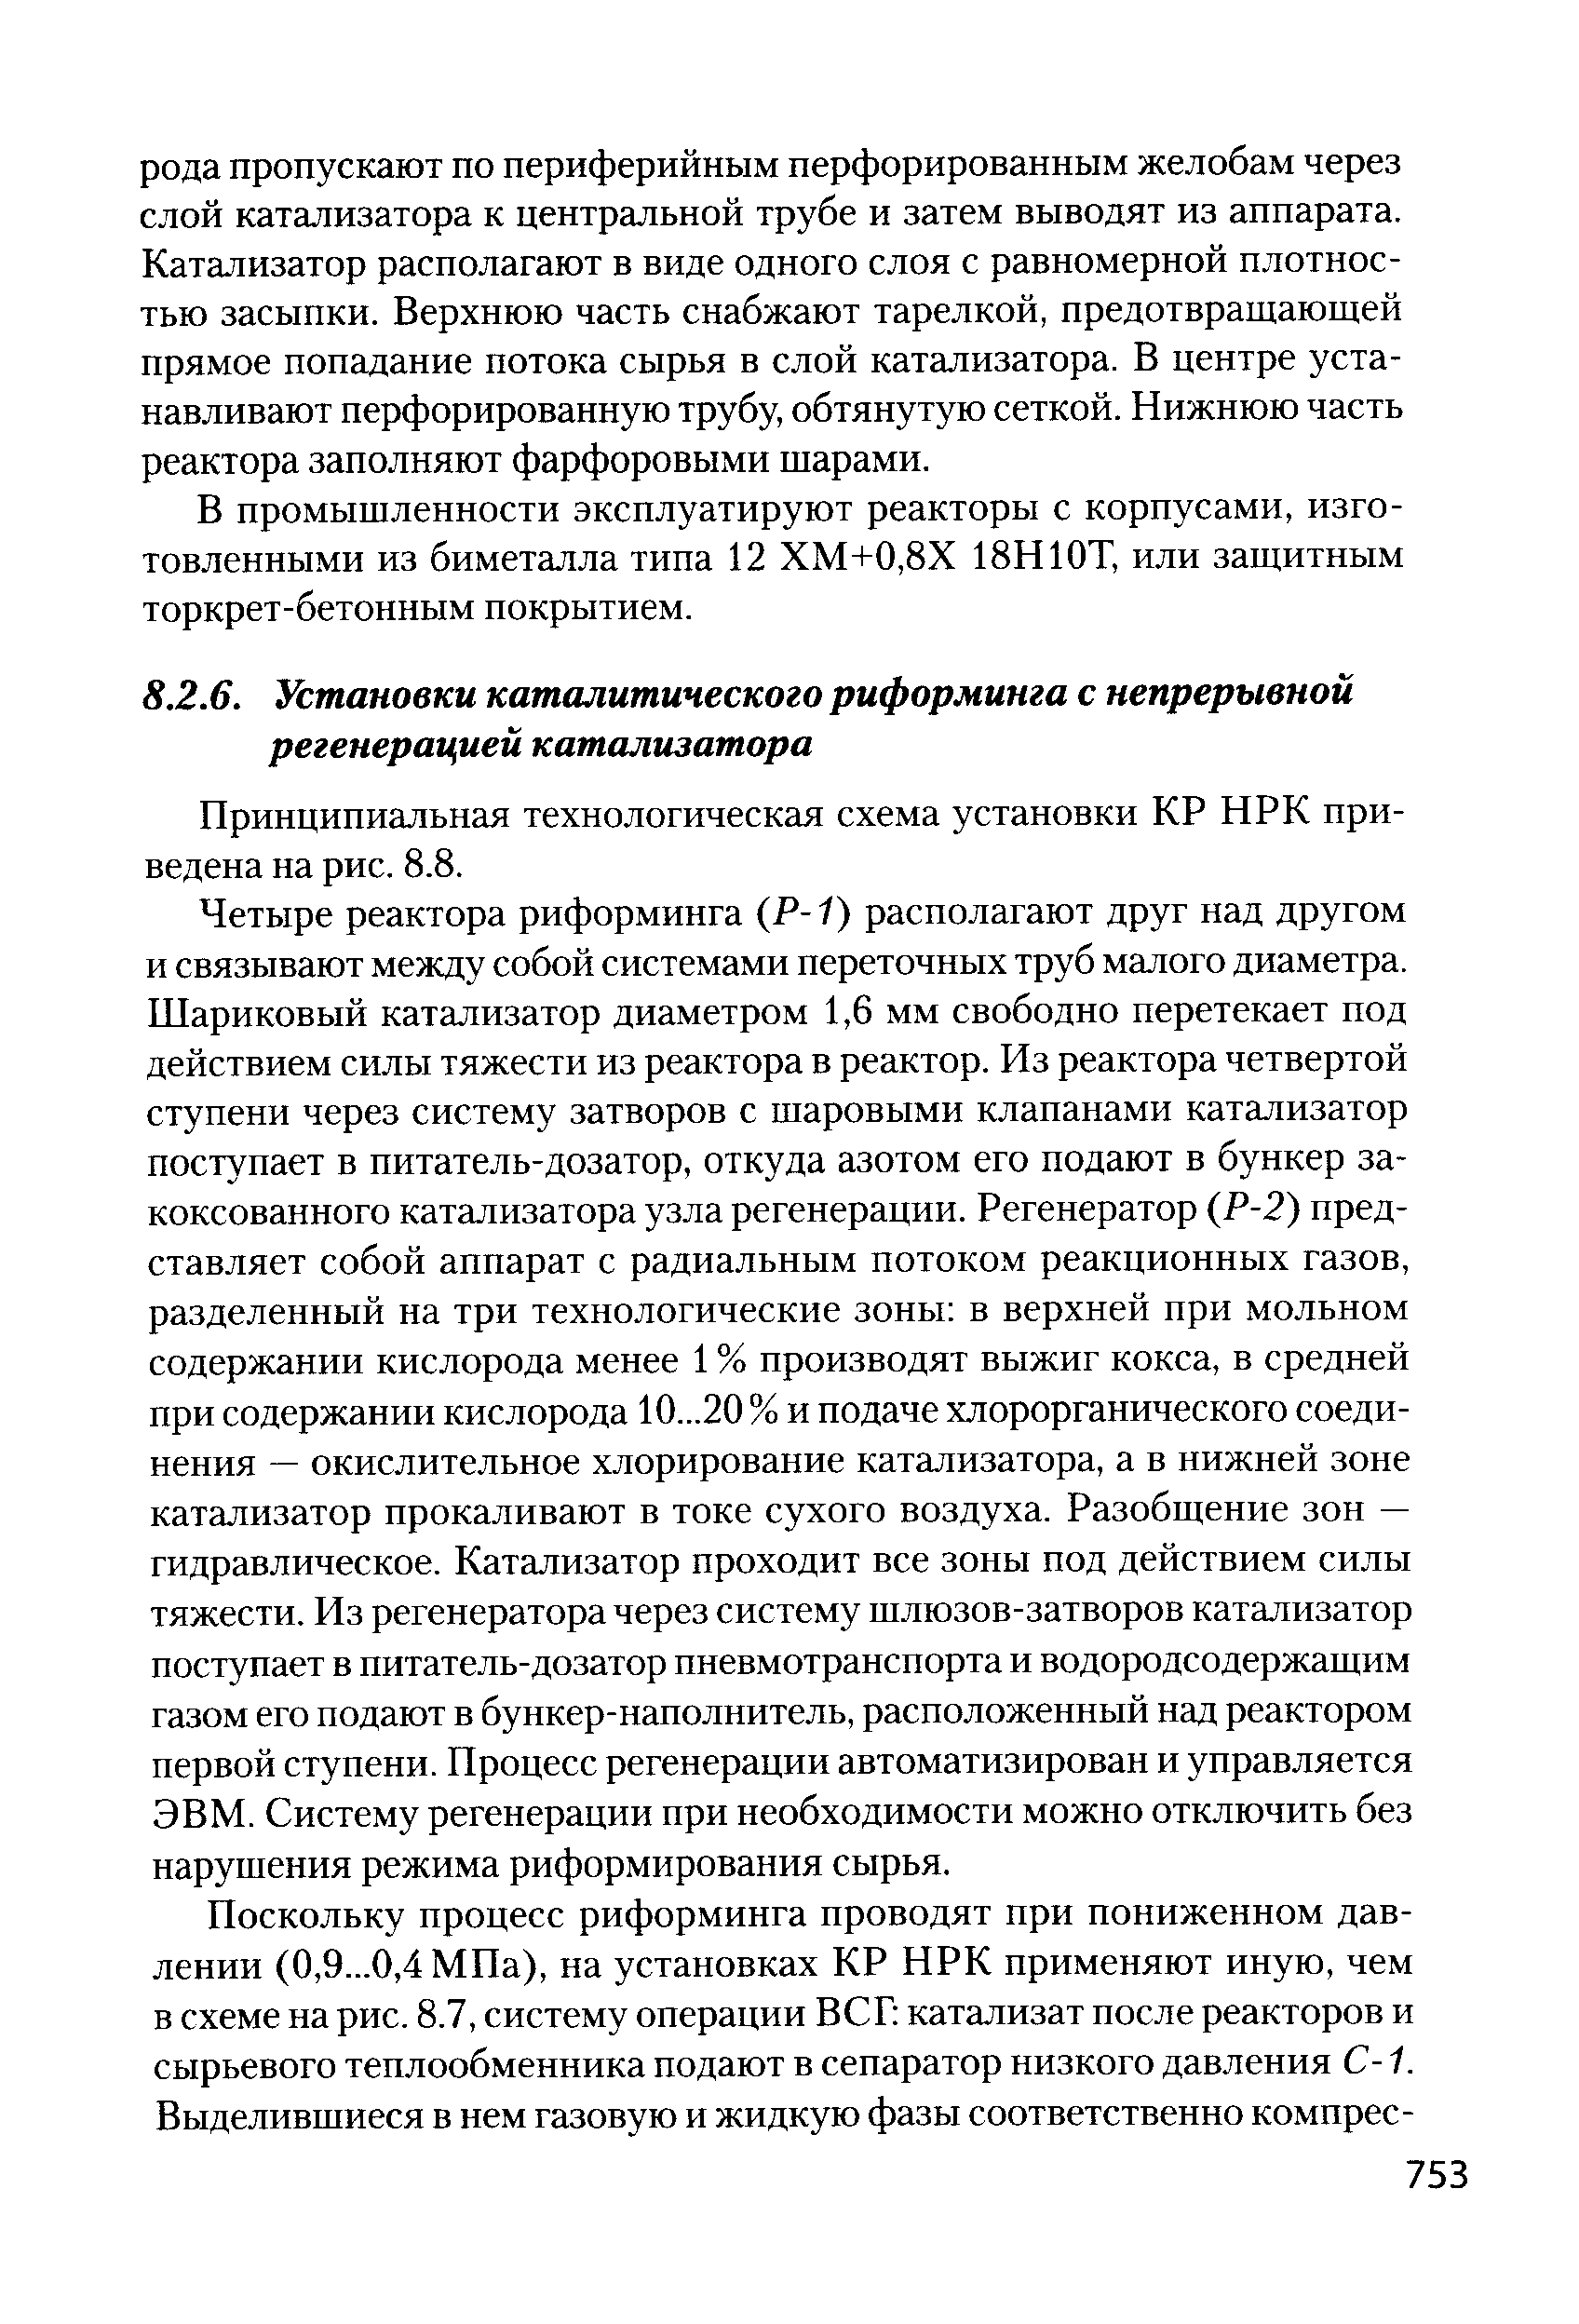 Принципиальная технологическая схема установки КР НРК приведена на рис. 8.8.